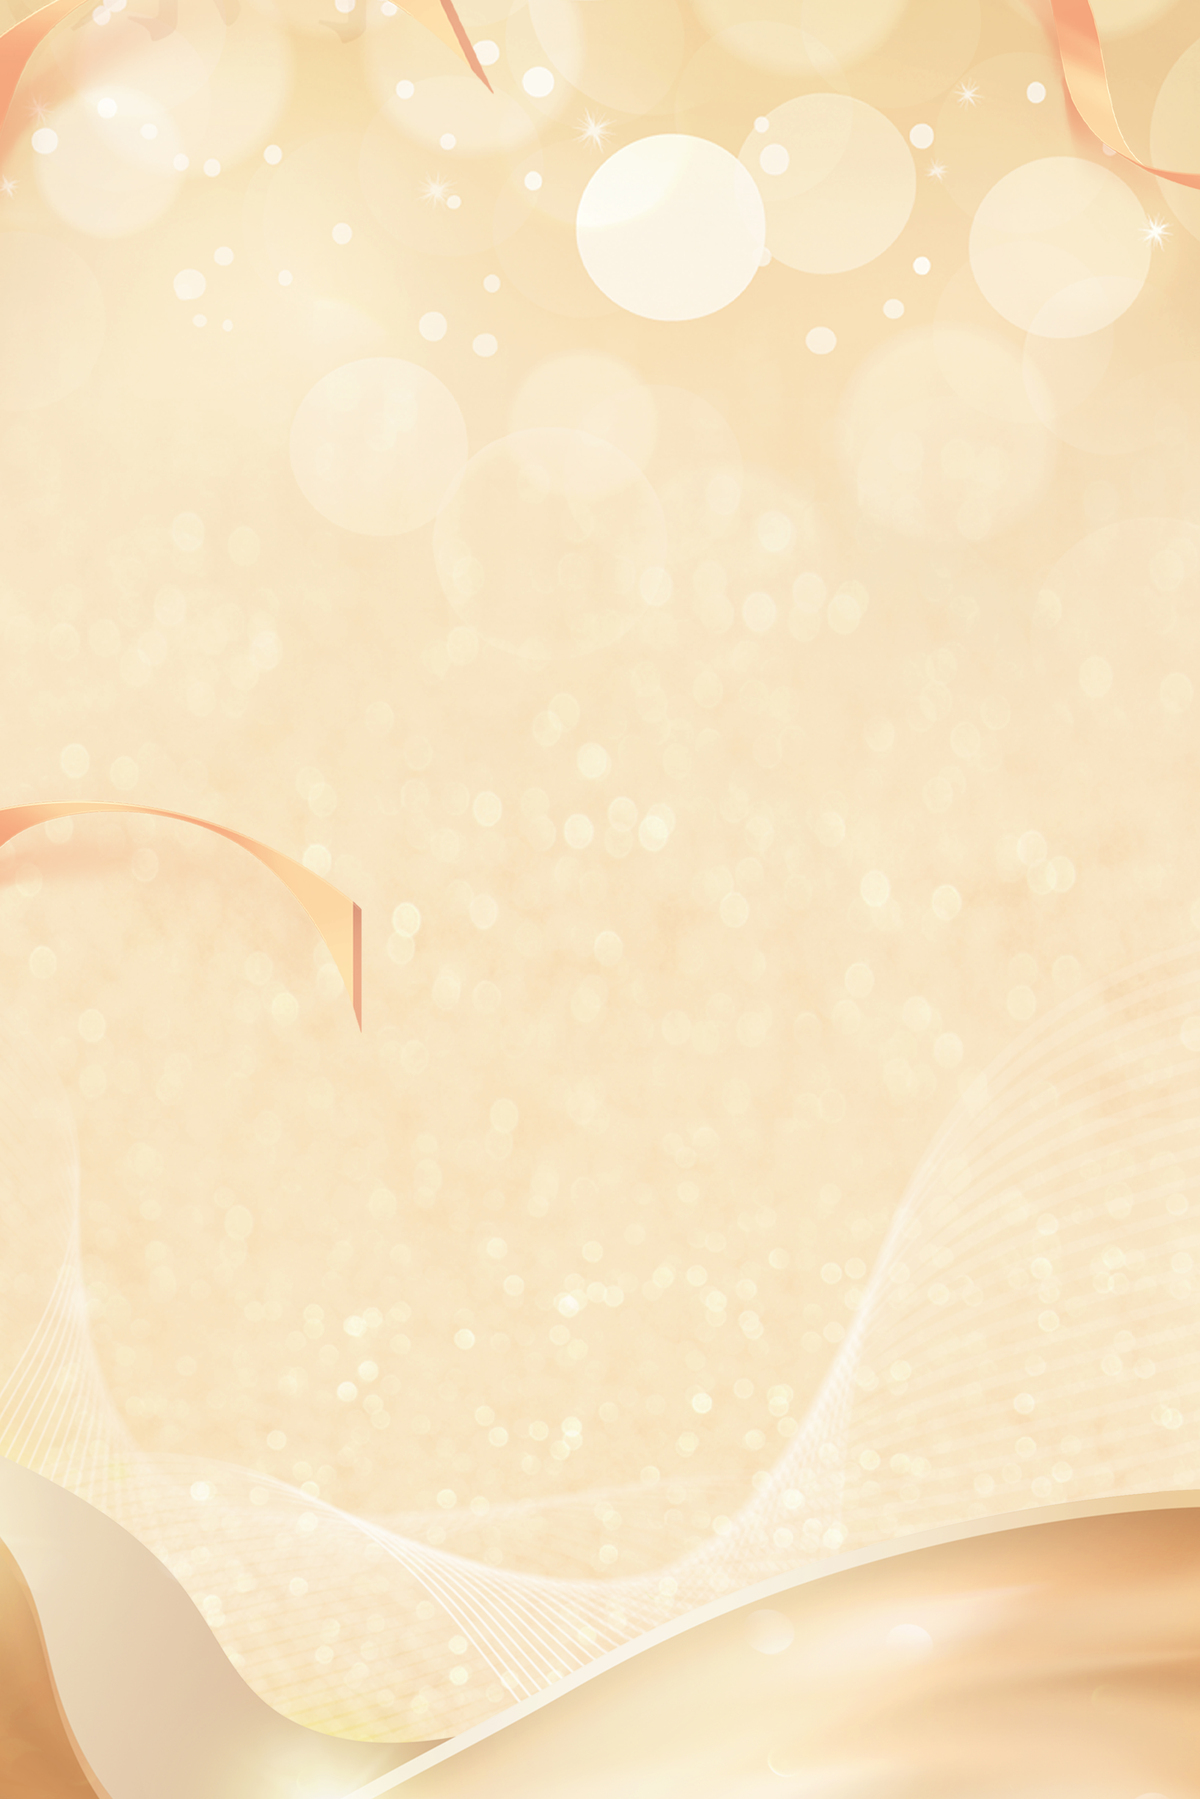 38妇女节女王节金色丝绸质感背景图片